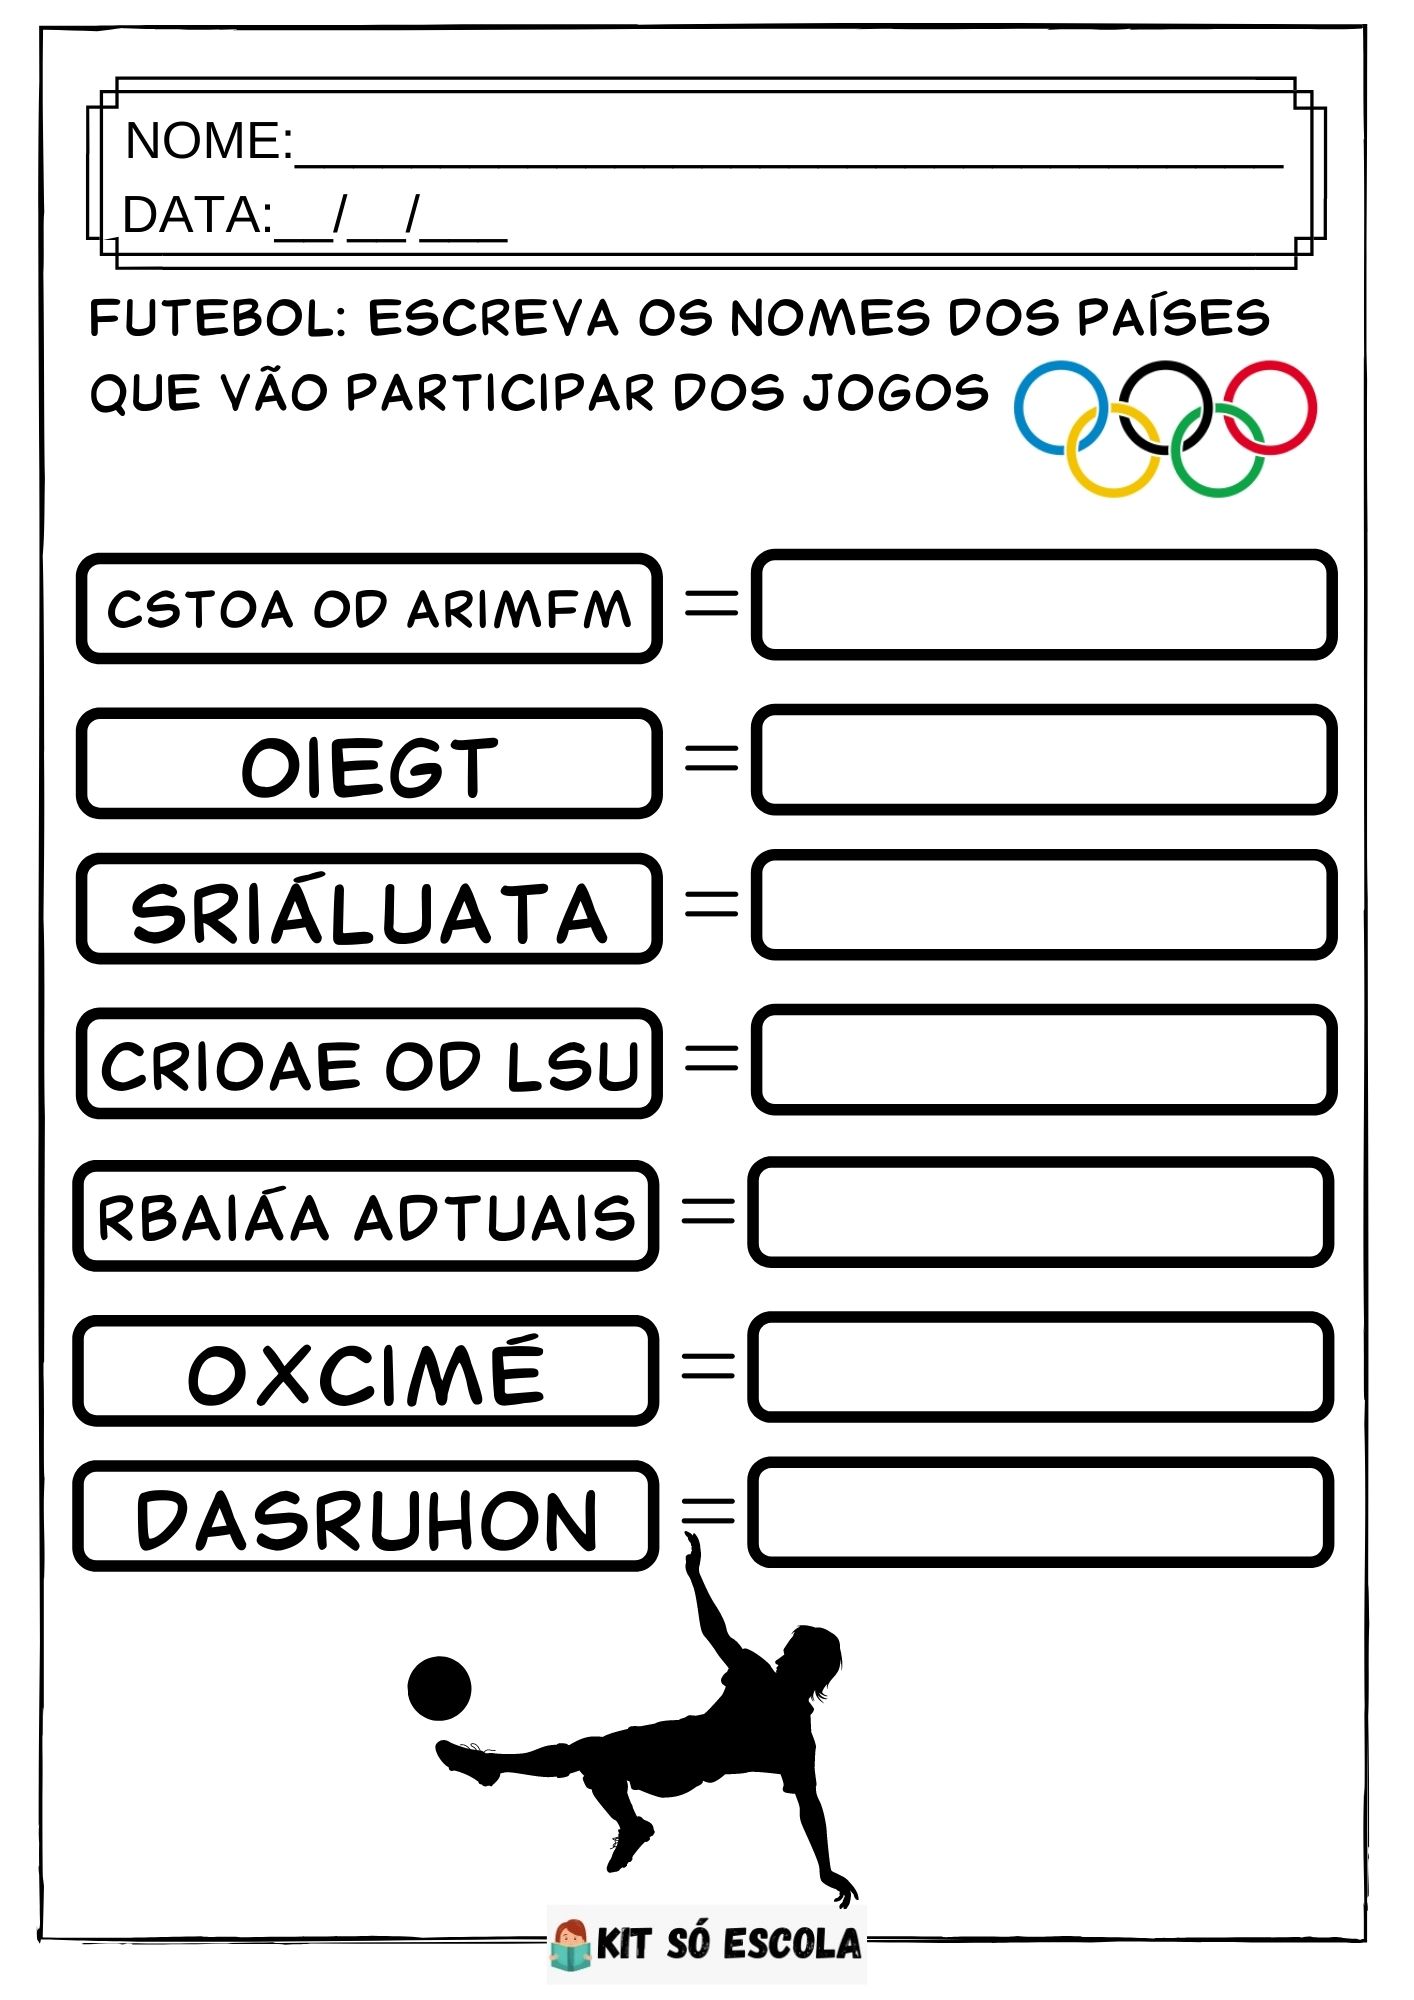 Jogos Olímpicos - Textos Informativos Para Imprimir — SÓ ESCOLA